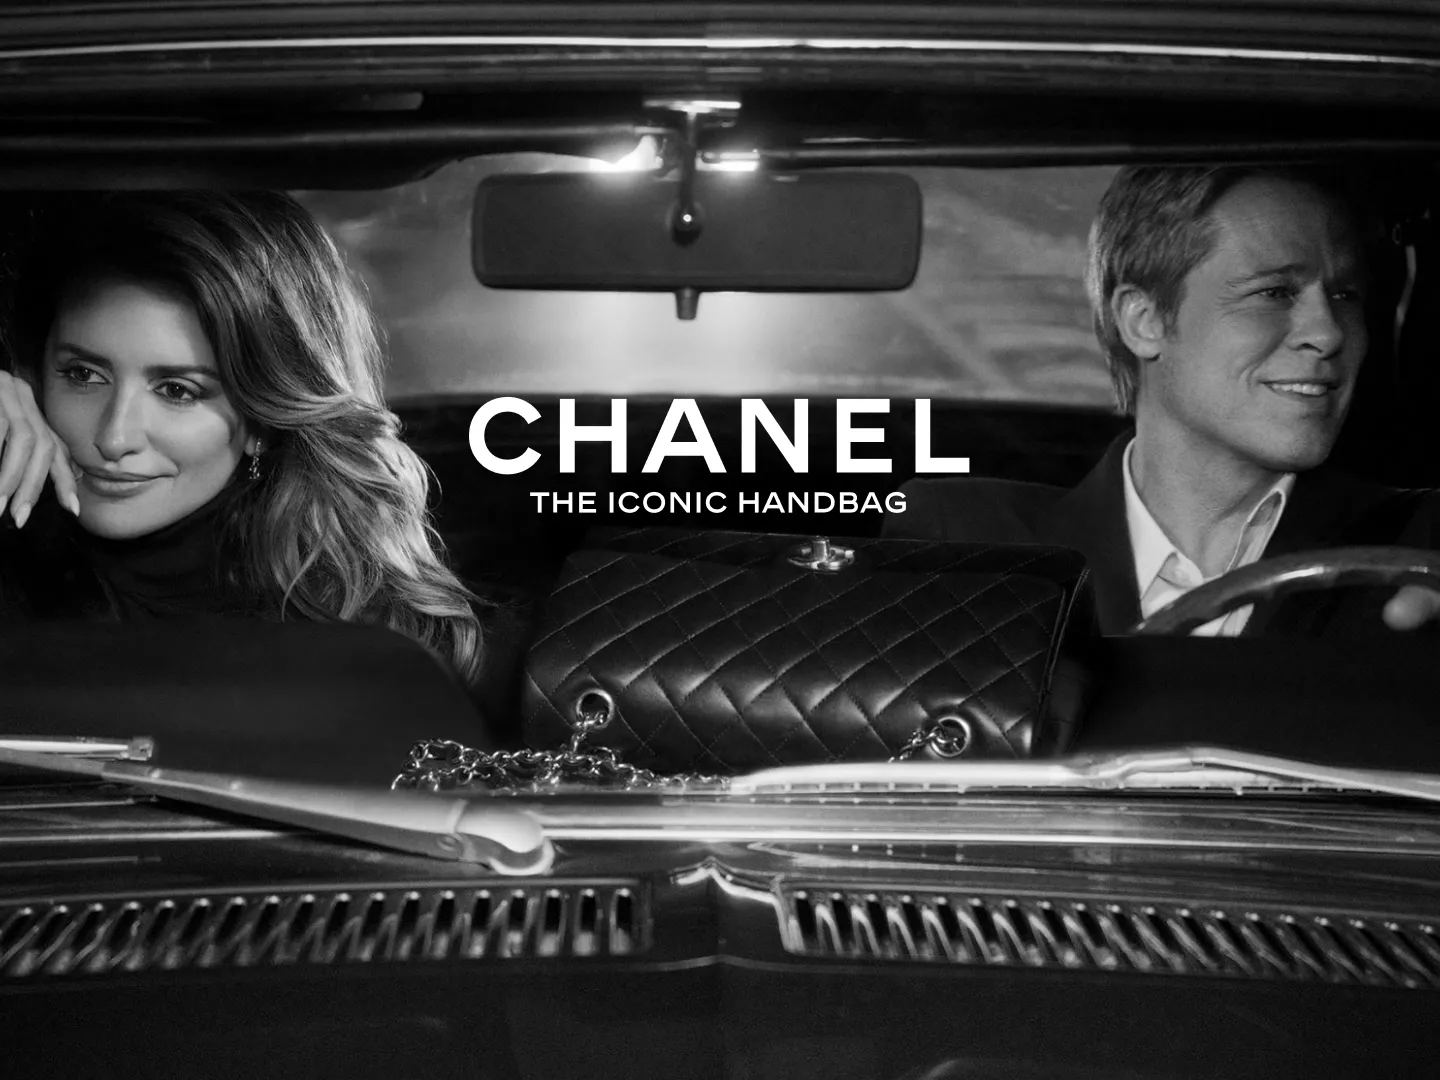 Brad Pitt i Penélope Cruz u novoj Chanelovoj kampanji oživjeli su klasik francuske kinematografije